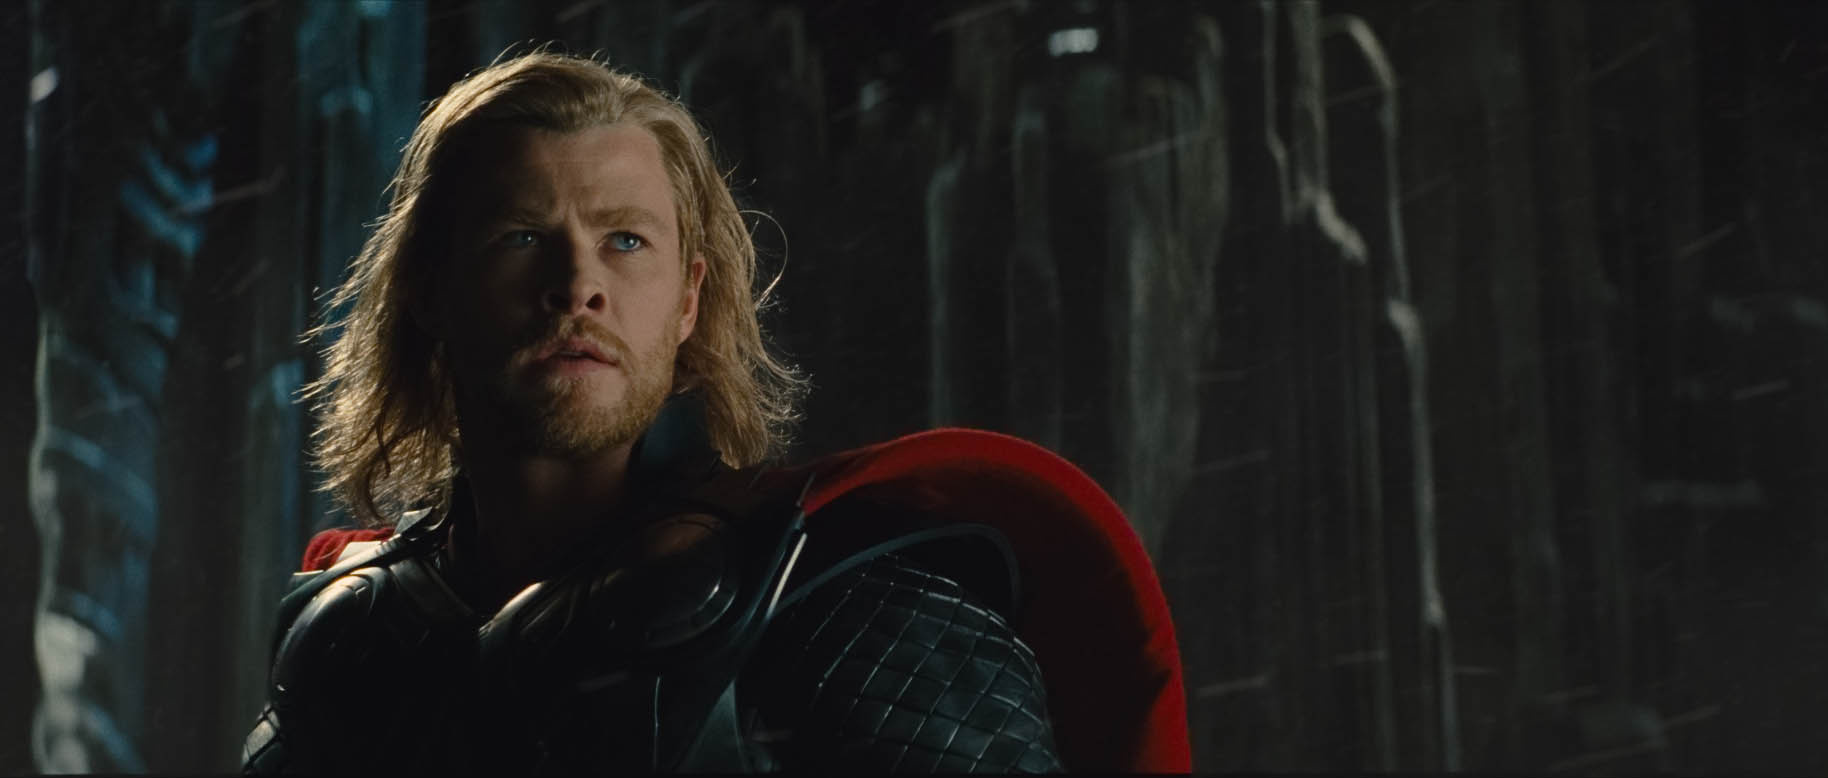 Chris Hemsworth spelade guden i filmen "Thor" och ses alltså även i "The Avengers".